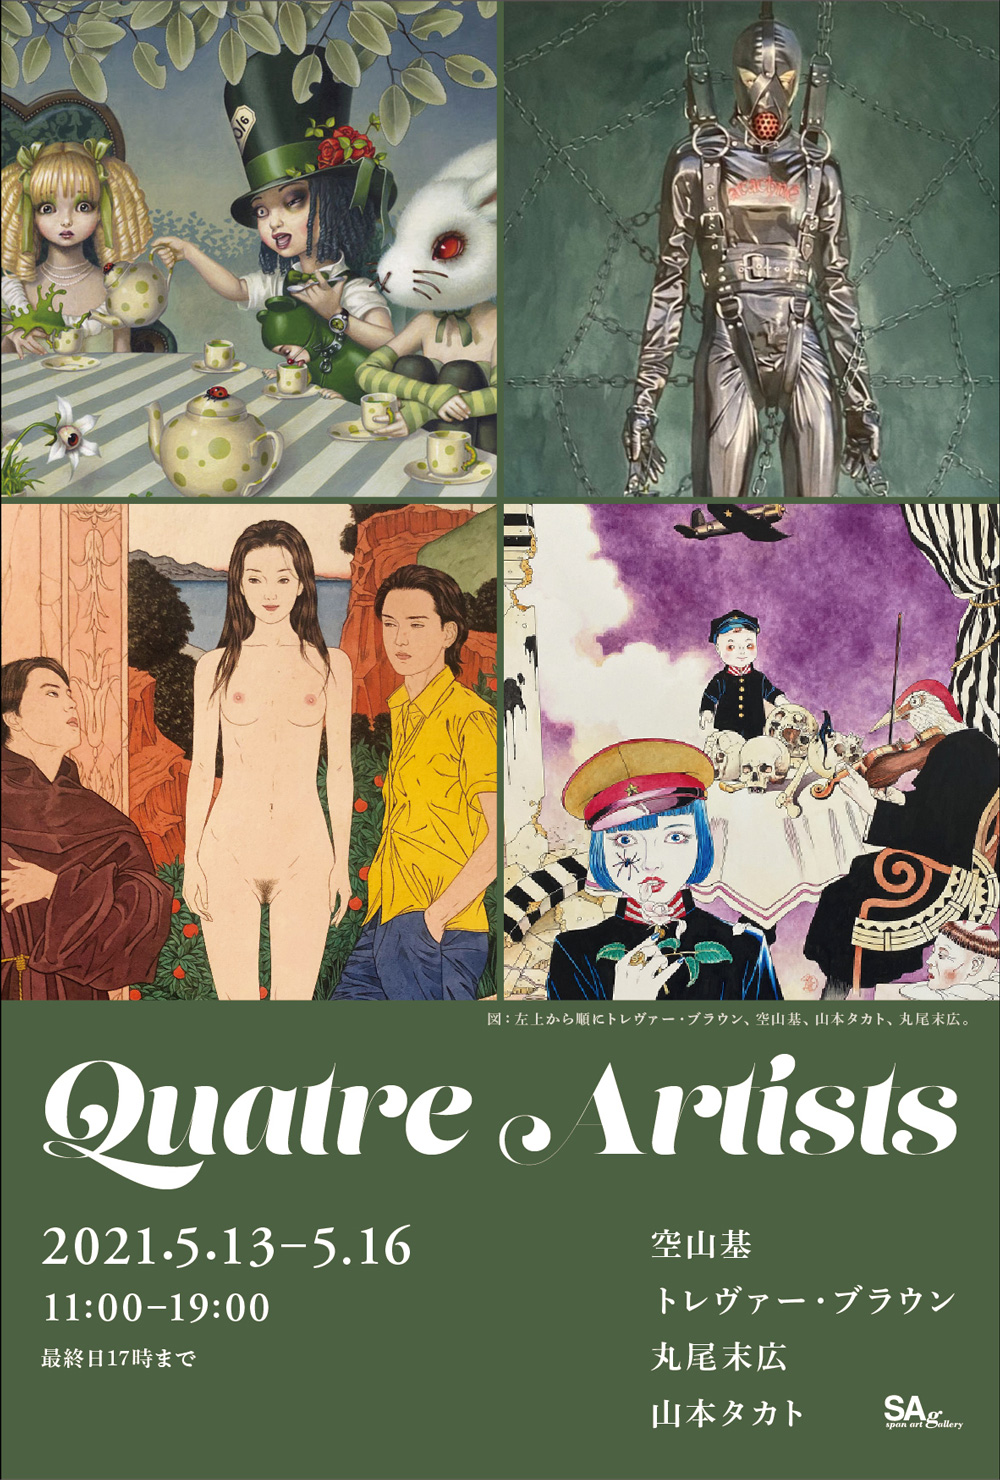 Quatre Artistsフライヤー, Quatre Artists Flyer